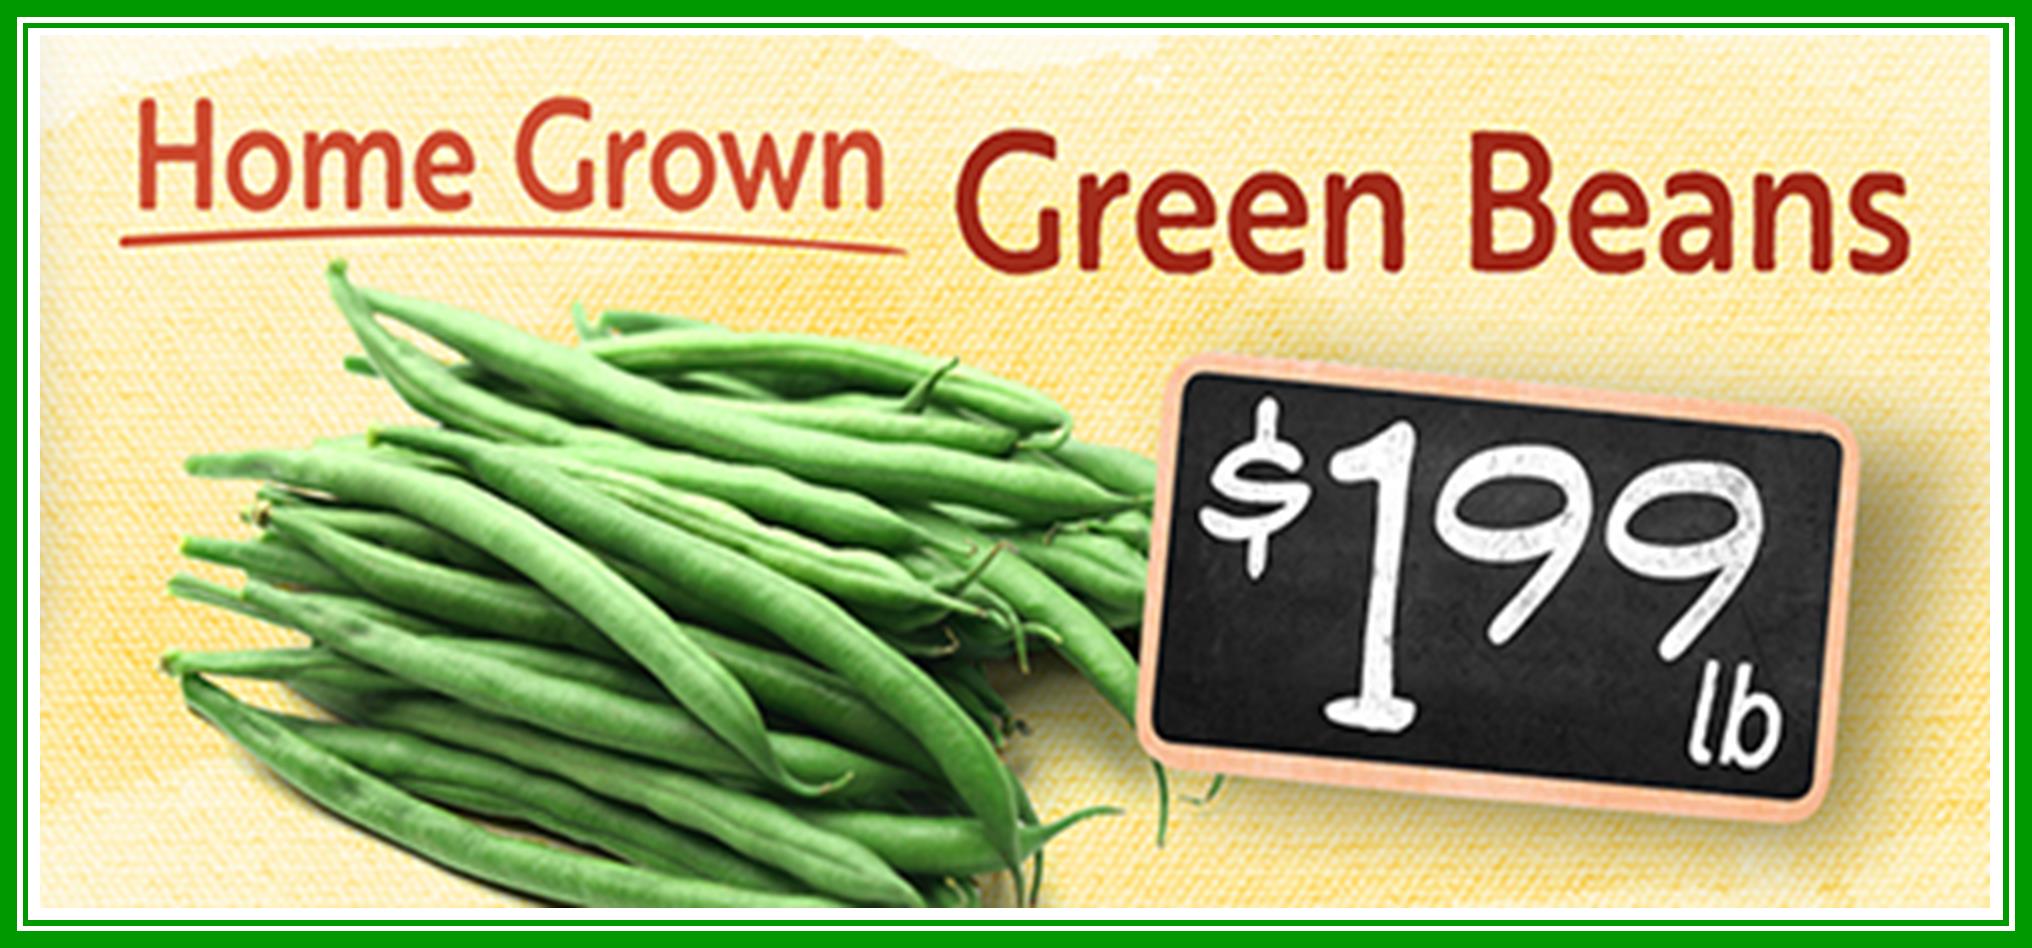 Green Beans HG 199.jpg